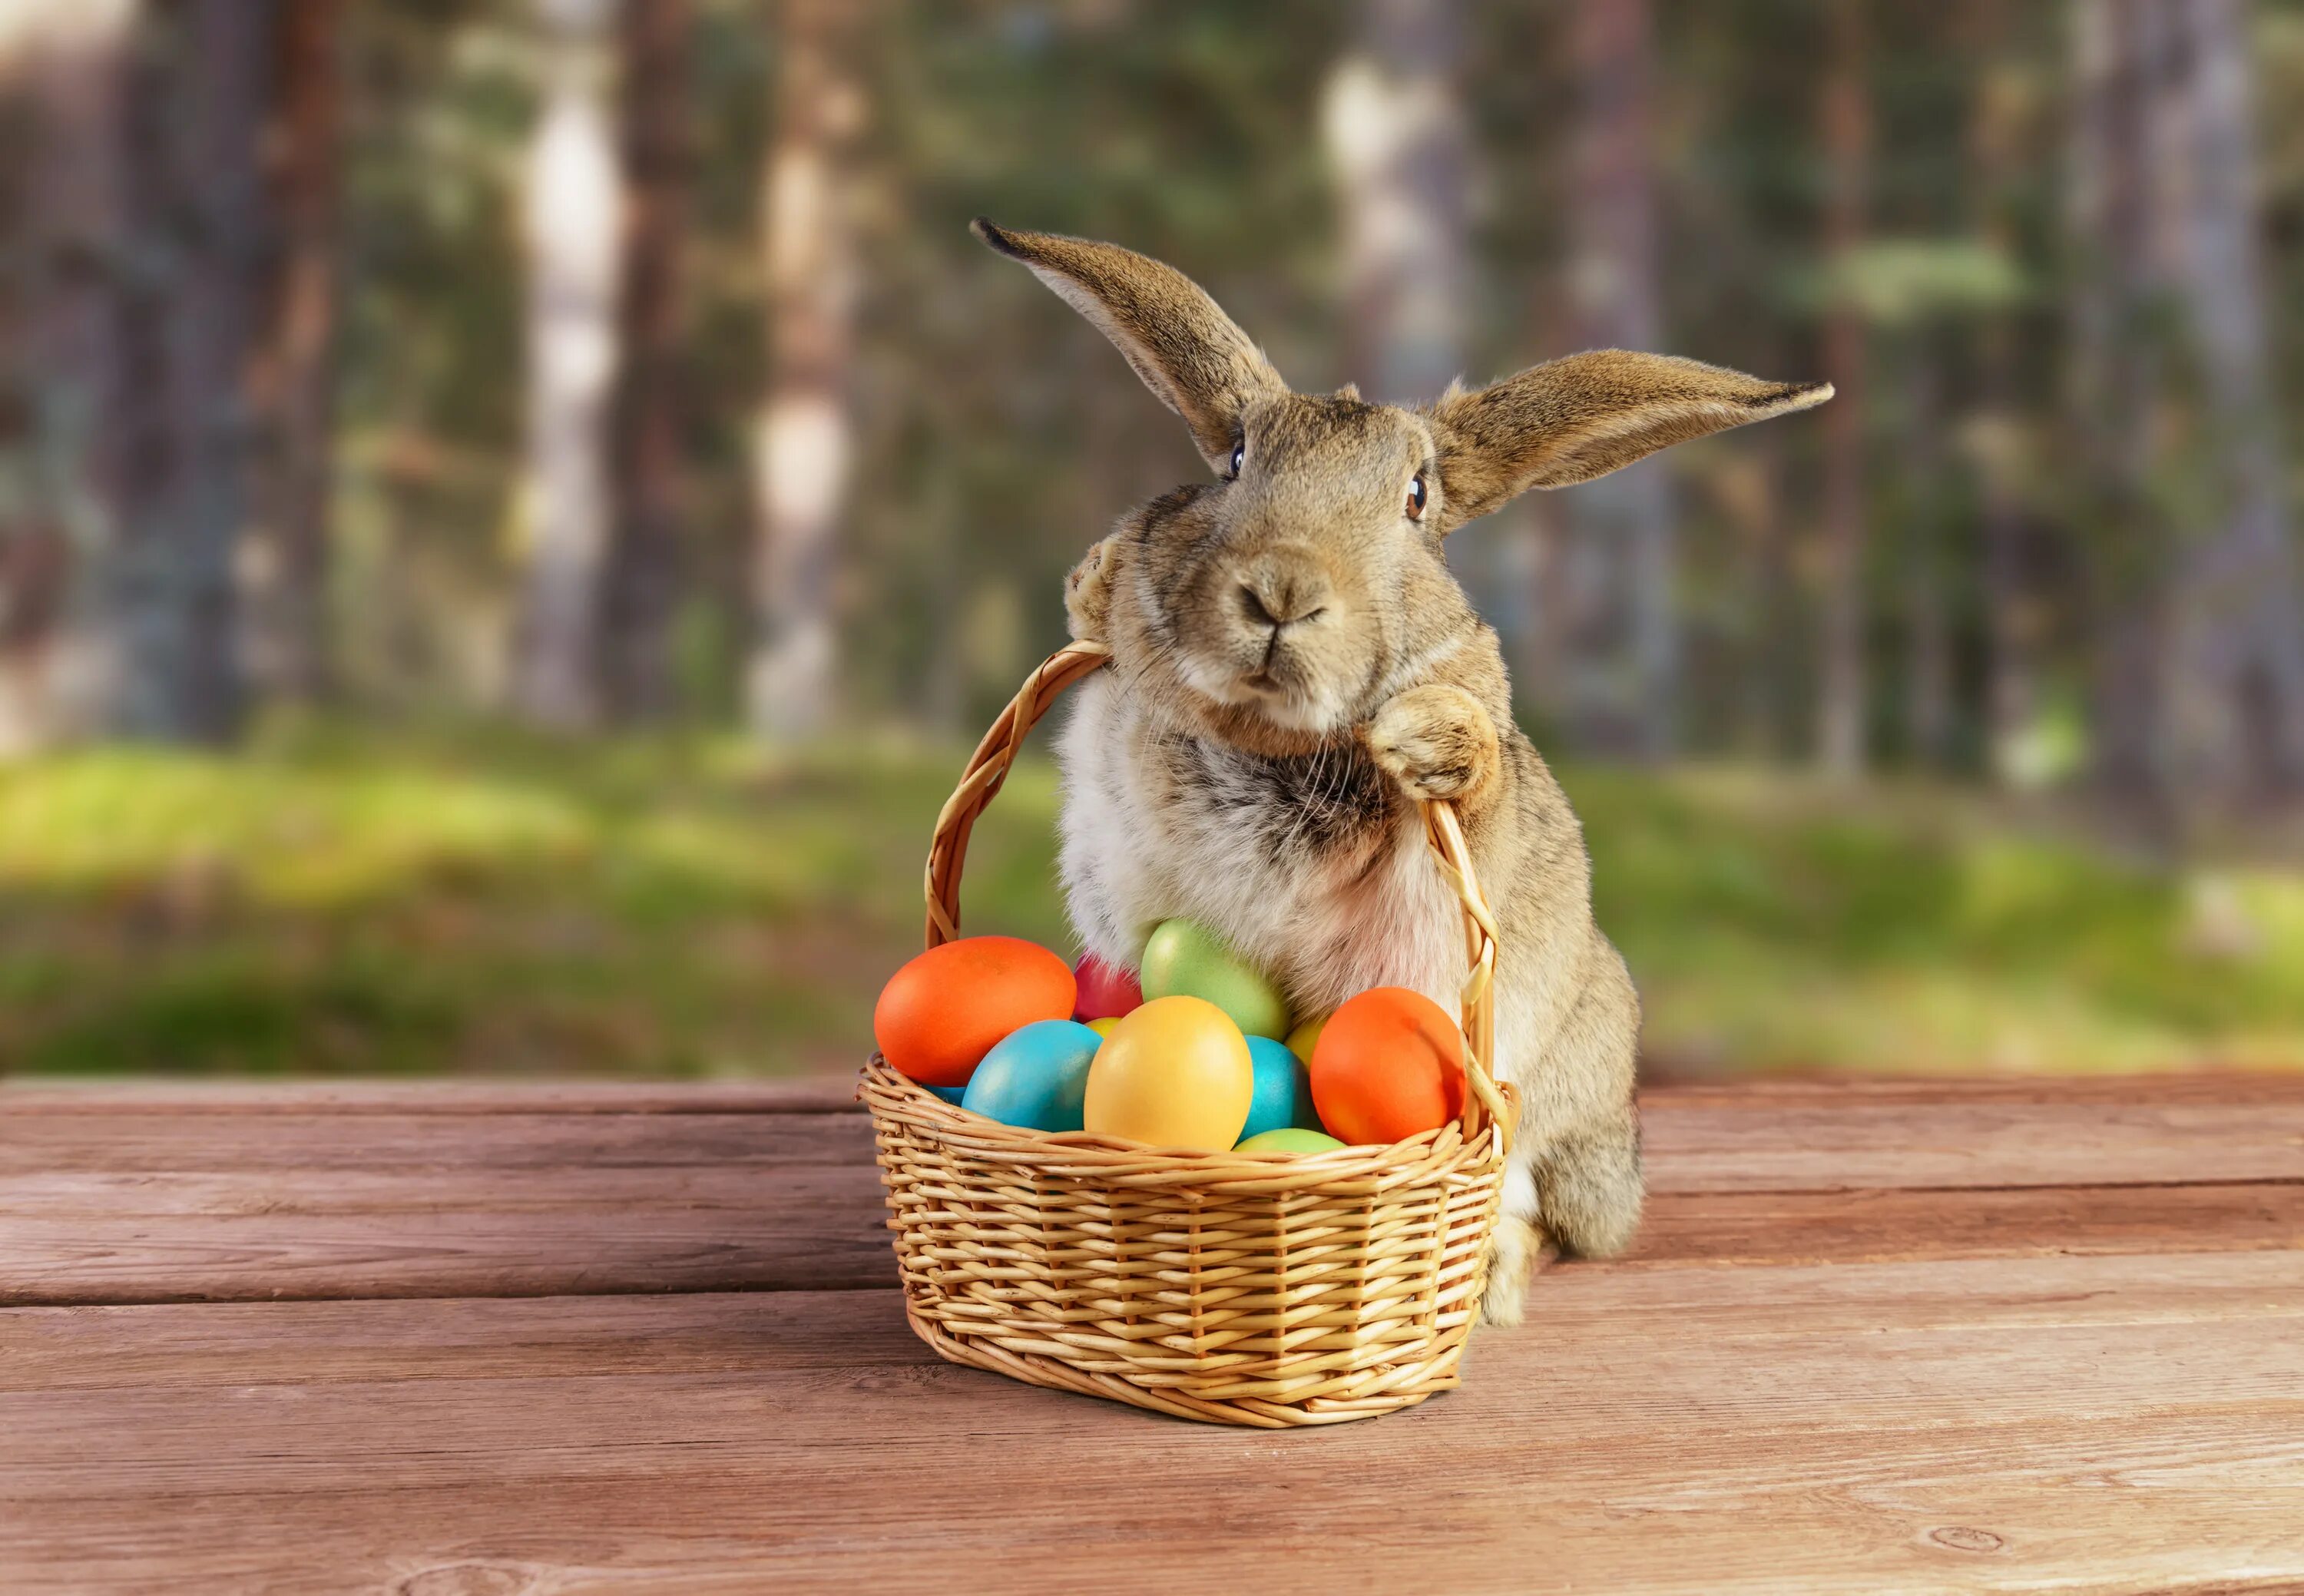 Кролик Bunny Пасхальный заяц. Easter Bunny — Пасхальный кролик. Пасхальный заяц (Osterhase). Пасхальный кролик с яйцами.